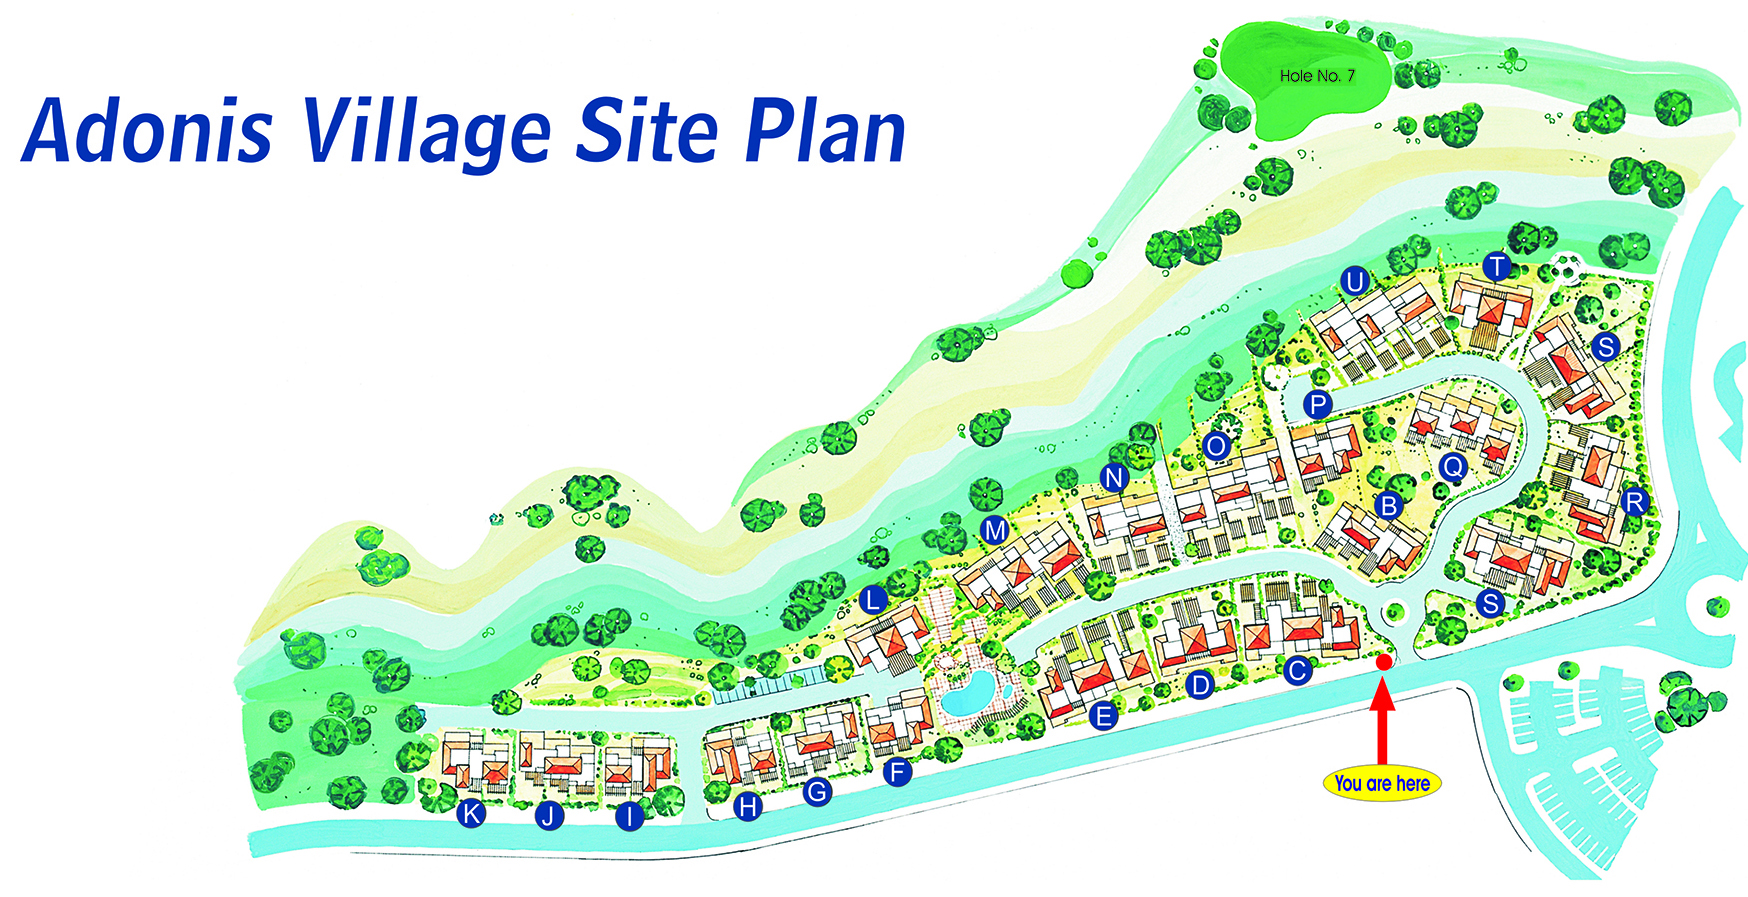 Adonis Village SIte Plan